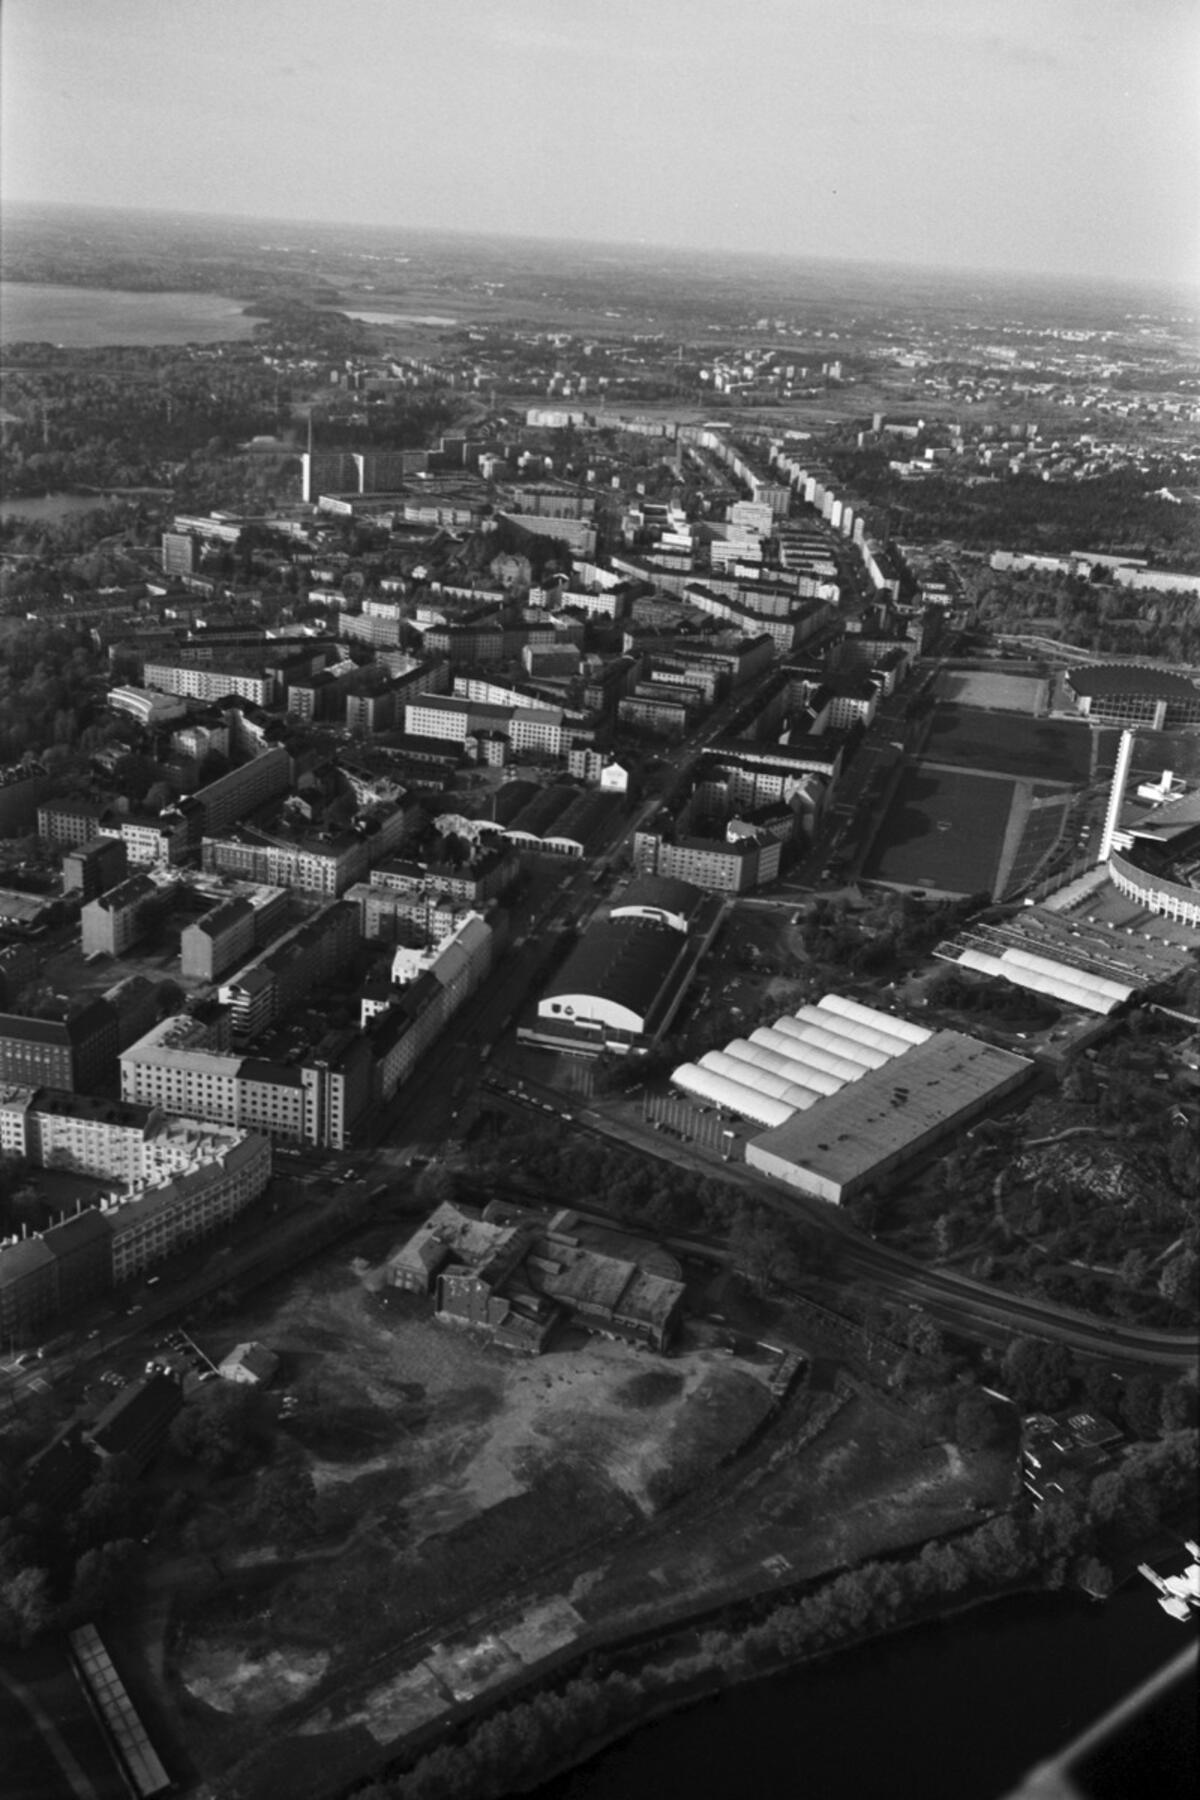 Mannerheimvägen. Sned flygbild från Tölöviken mot nordost. I förgrunden syns sockerbrukets tomt med en byggnad i kanten mot Helsingegatan. I mitten Mässhallen, till höger på Tallbackafältet den tillfälliga Mässhallen C, dvs. Folkens hall. I bakgrunden i mitten syns Mannerheimvägen. Bilden är från år 1970.